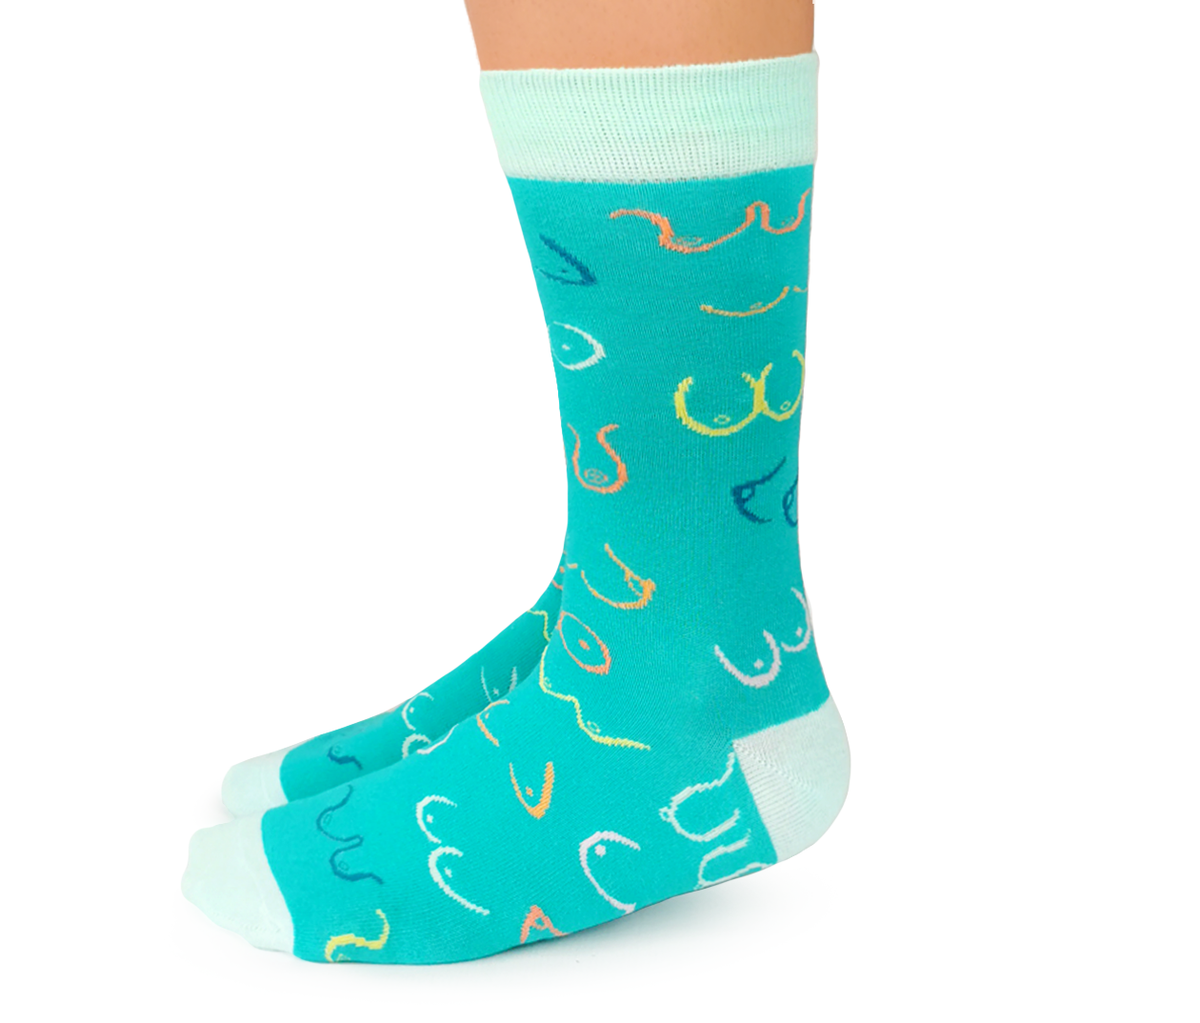 Cute breast Socks for Women - Uptown Sox